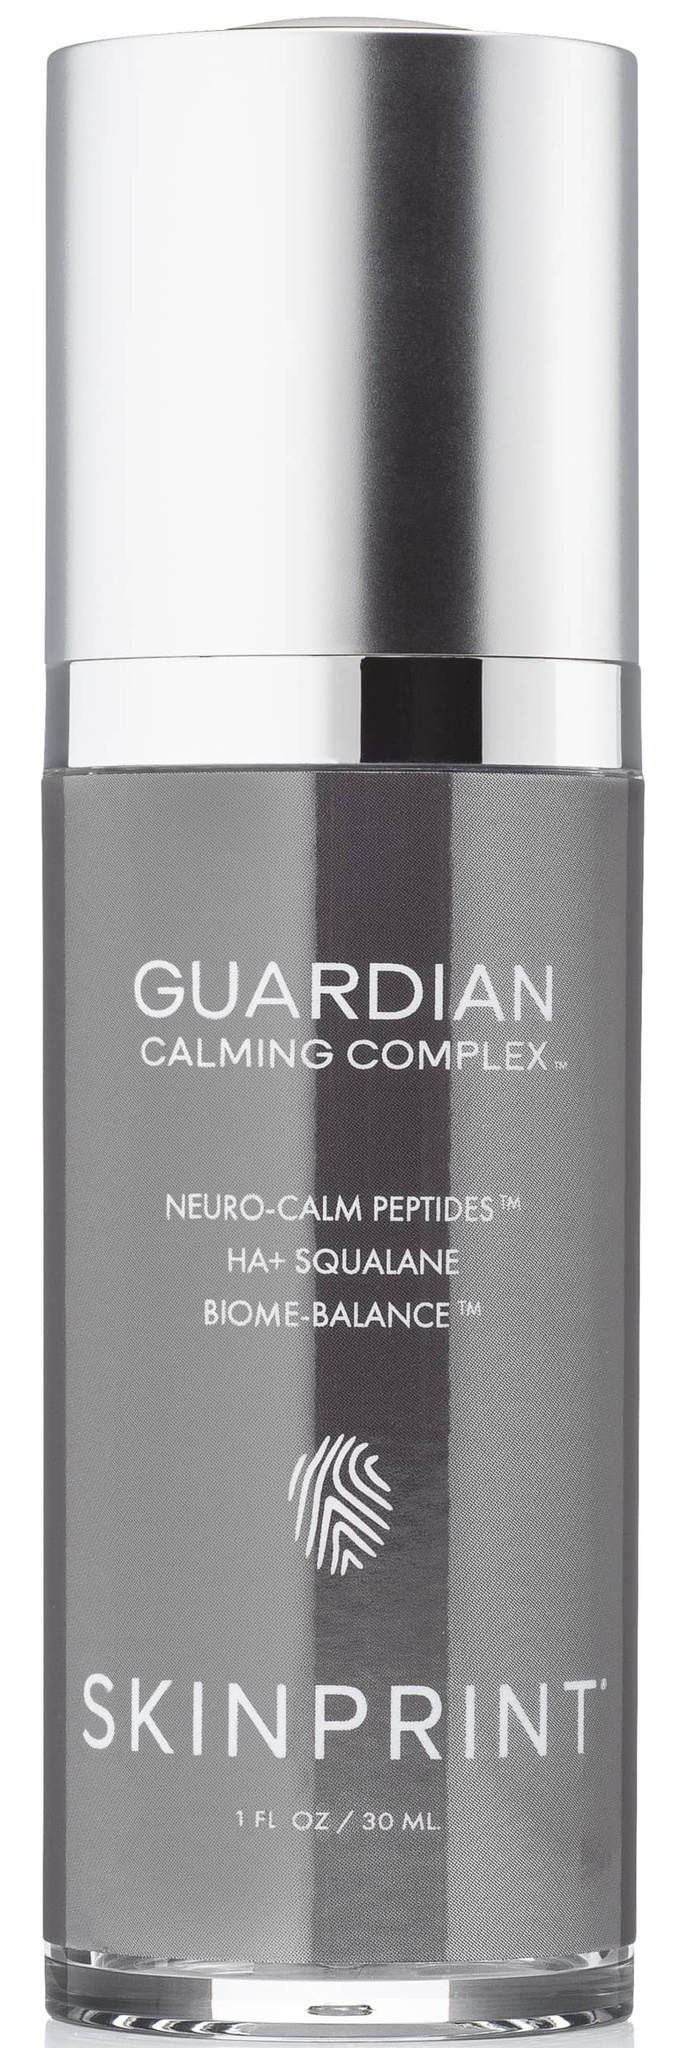 Skinprint Guardian Calming Complex